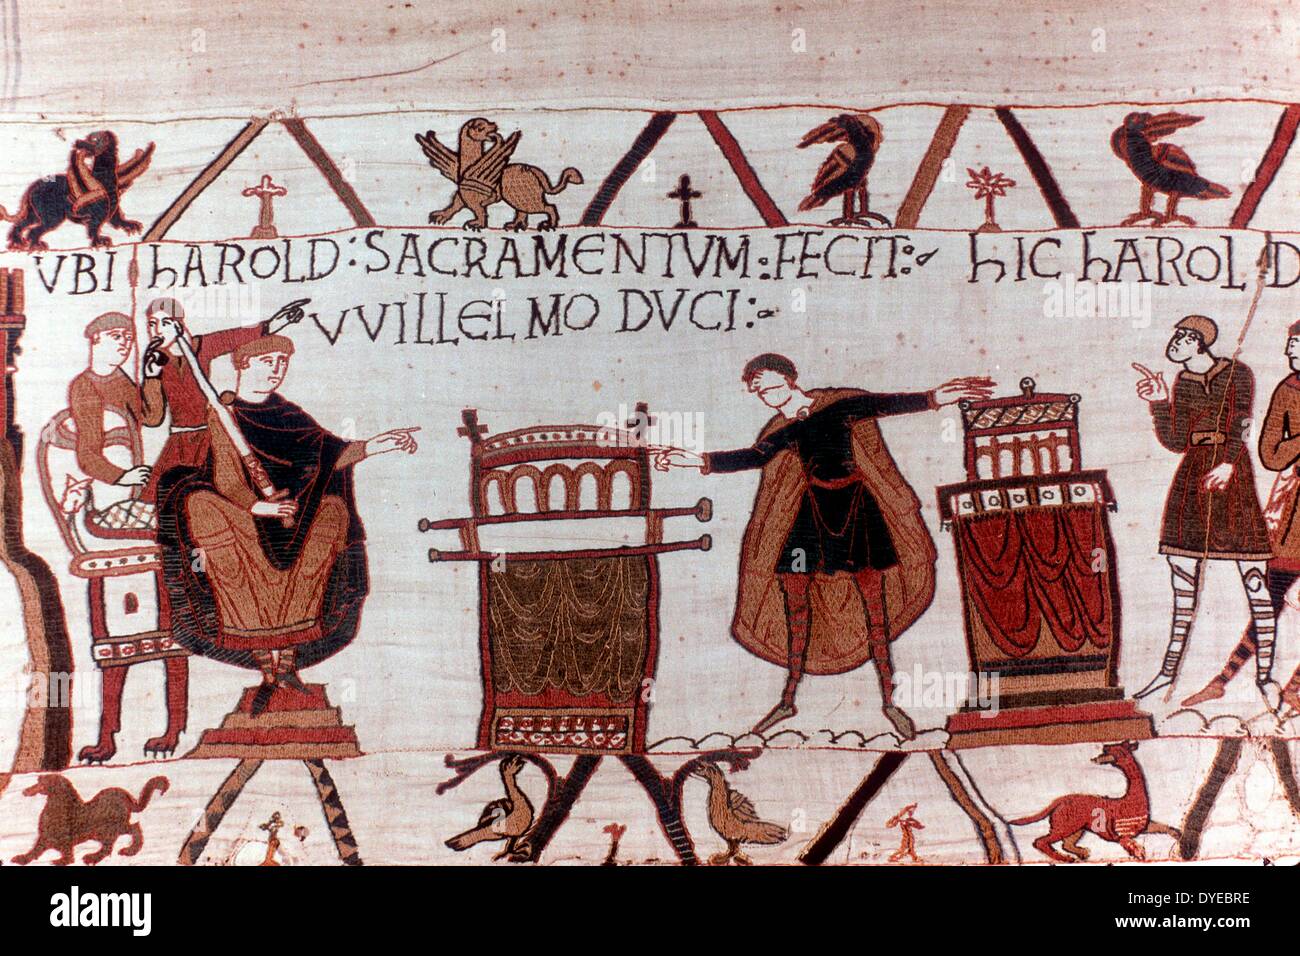 Scena dall'Arazzo di Bayeux un panno ricamato quasi 70 metri (230 ft) di lunghezza, che descrive gli eventi che portano fino alla conquista normanna dell'Inghilterra in materia di Guglielmo duca di Normandia e Harold, Earl del Wessex, successivamente re d'Inghilterra, e culminata nella battaglia di Hastings in 1066 Foto Stock